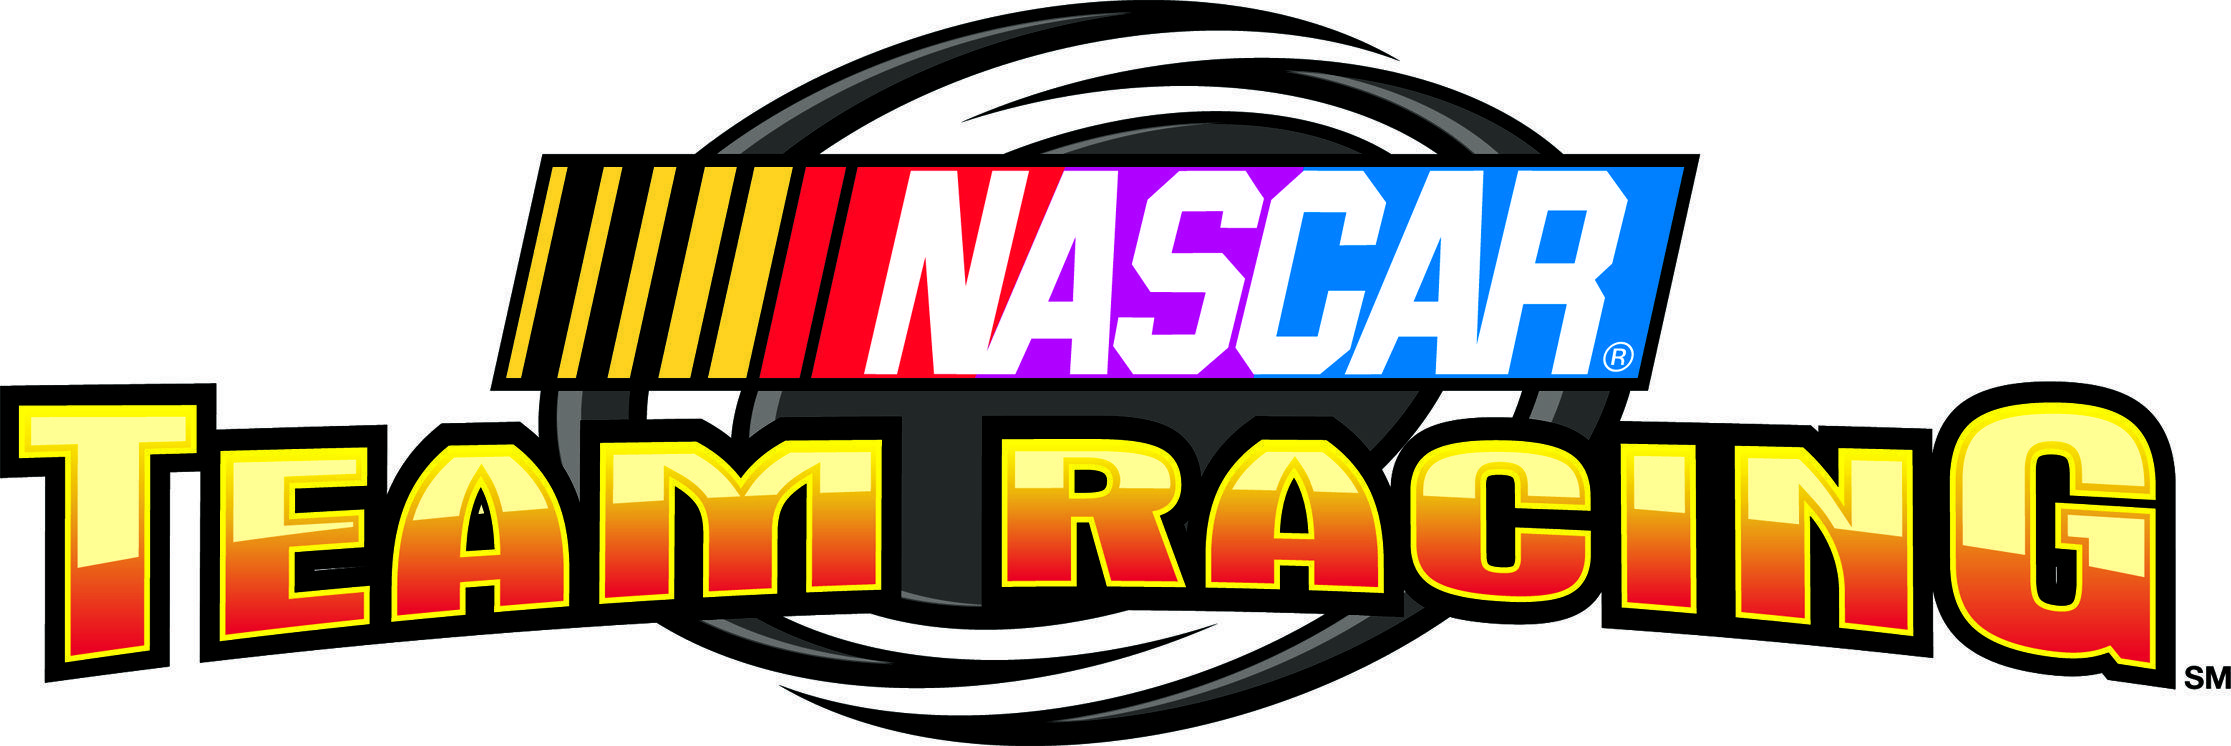 Nascar Race Team Logos